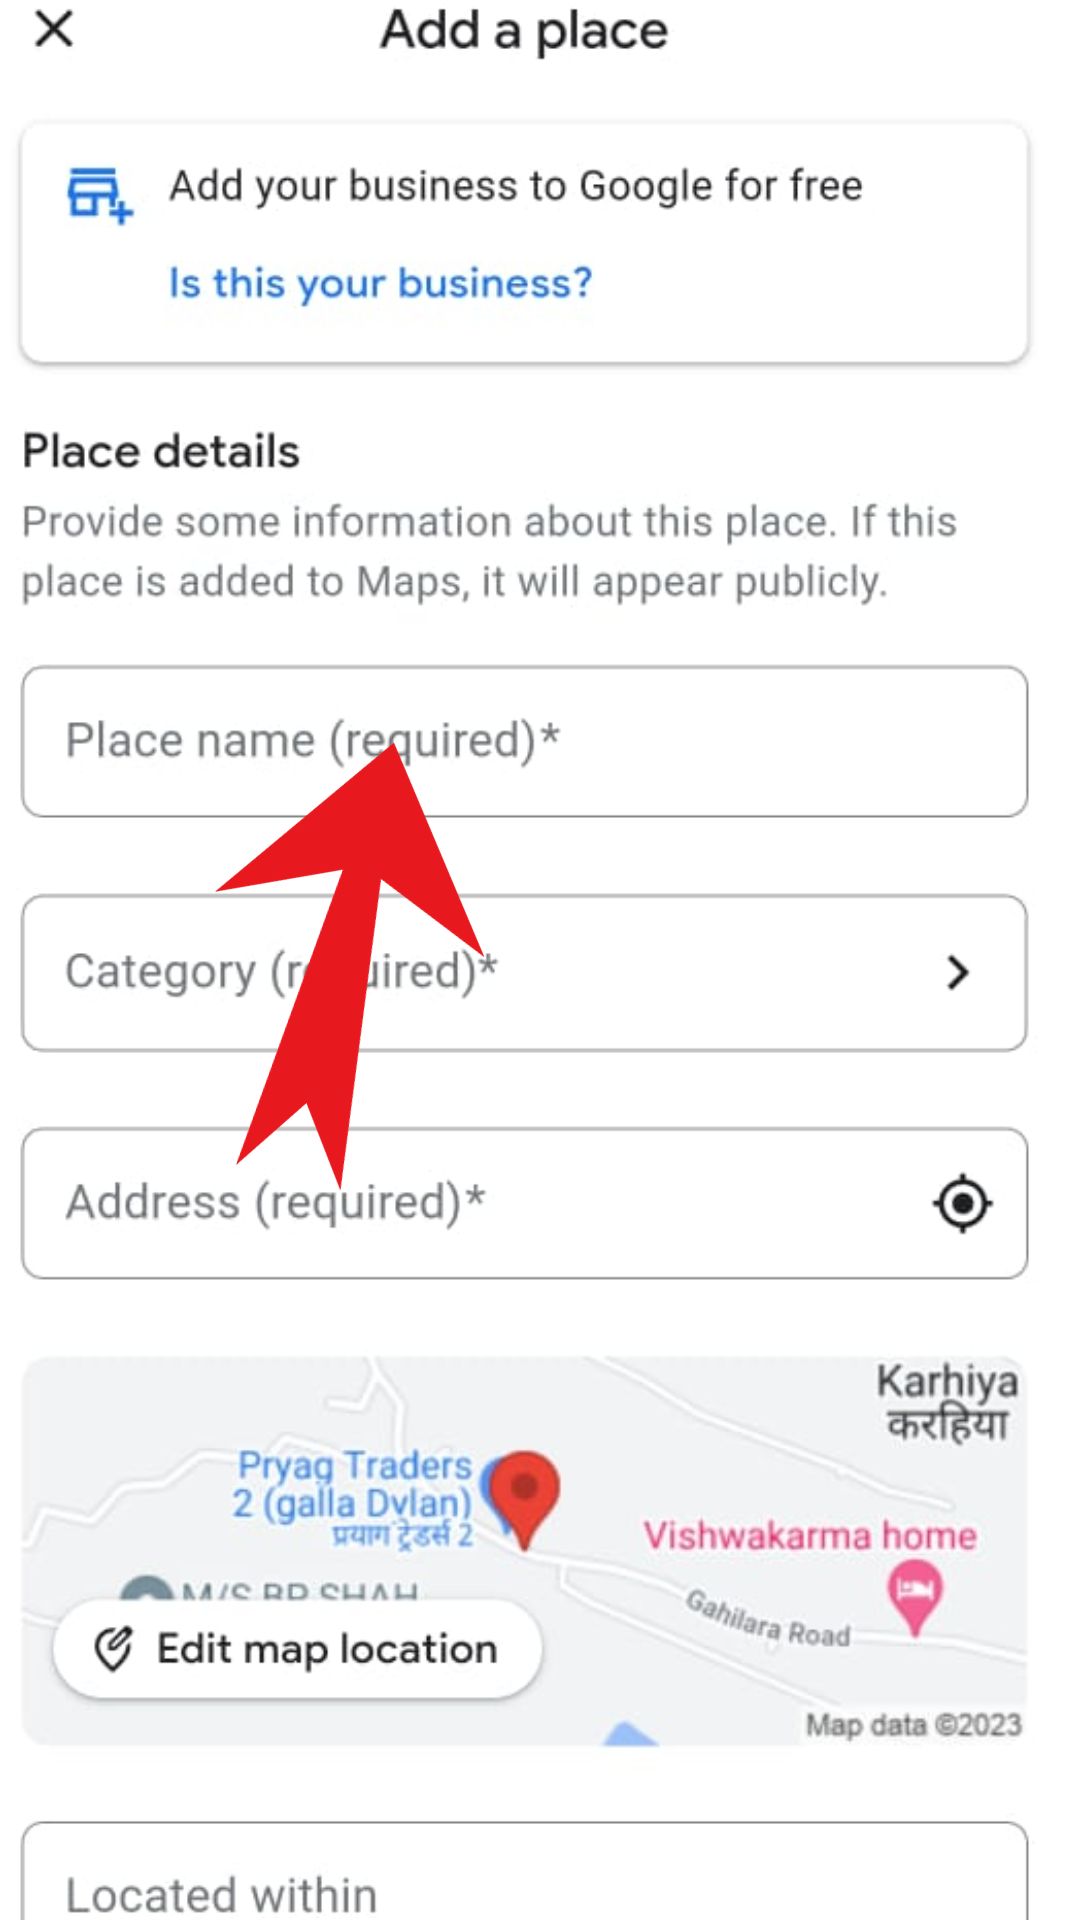 गूगल मैप पर अपना एड्रेस कैसे डालें (How to put your address on Google Map)